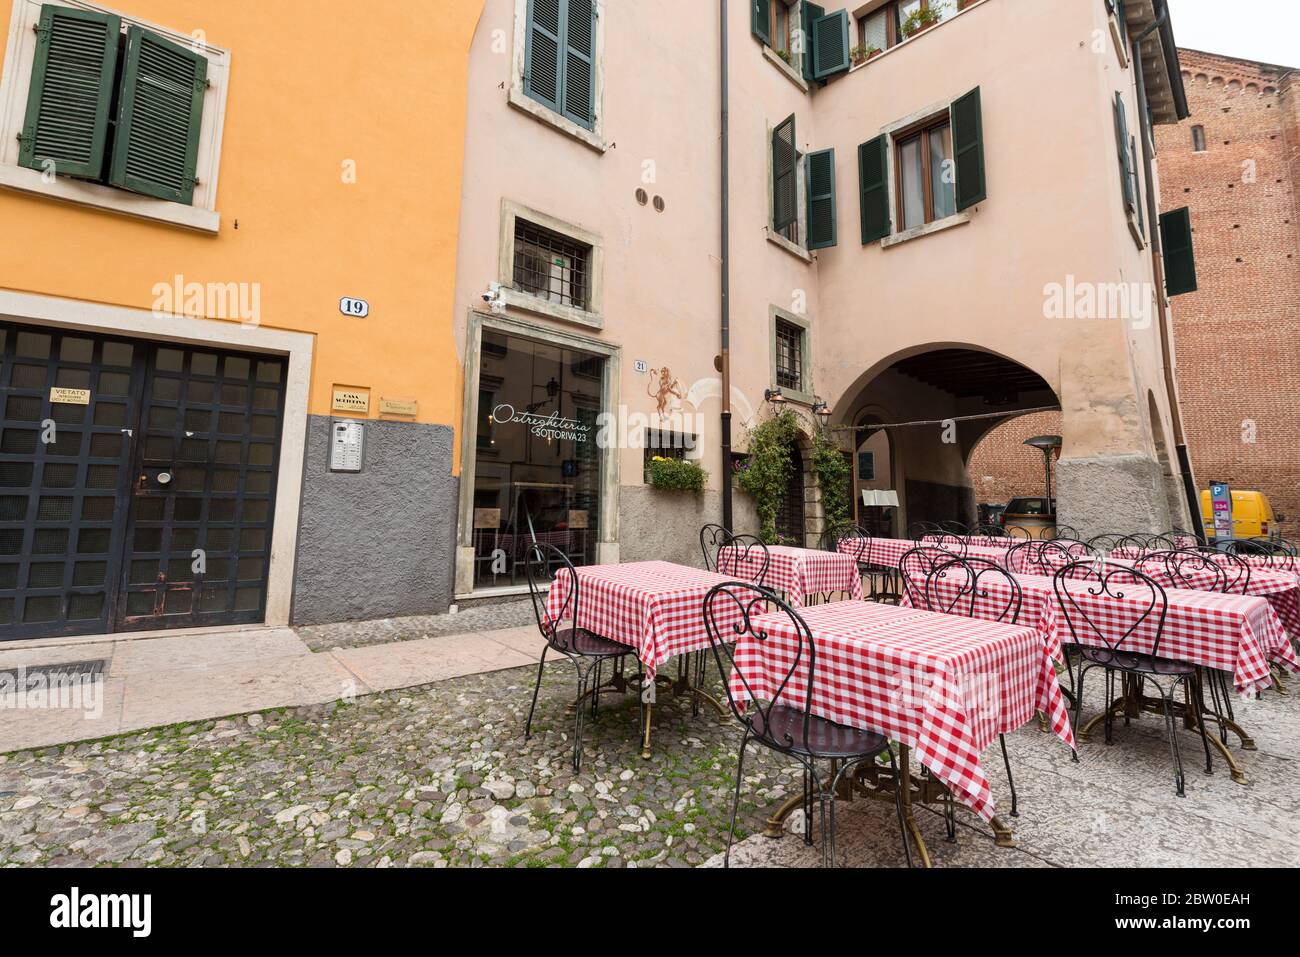 VERONA, ITALIA - 15, MARZO, 2018: Imagen de gran angular de restaurante colorido con mesas en la acera en Verona, Italia Foto de stock